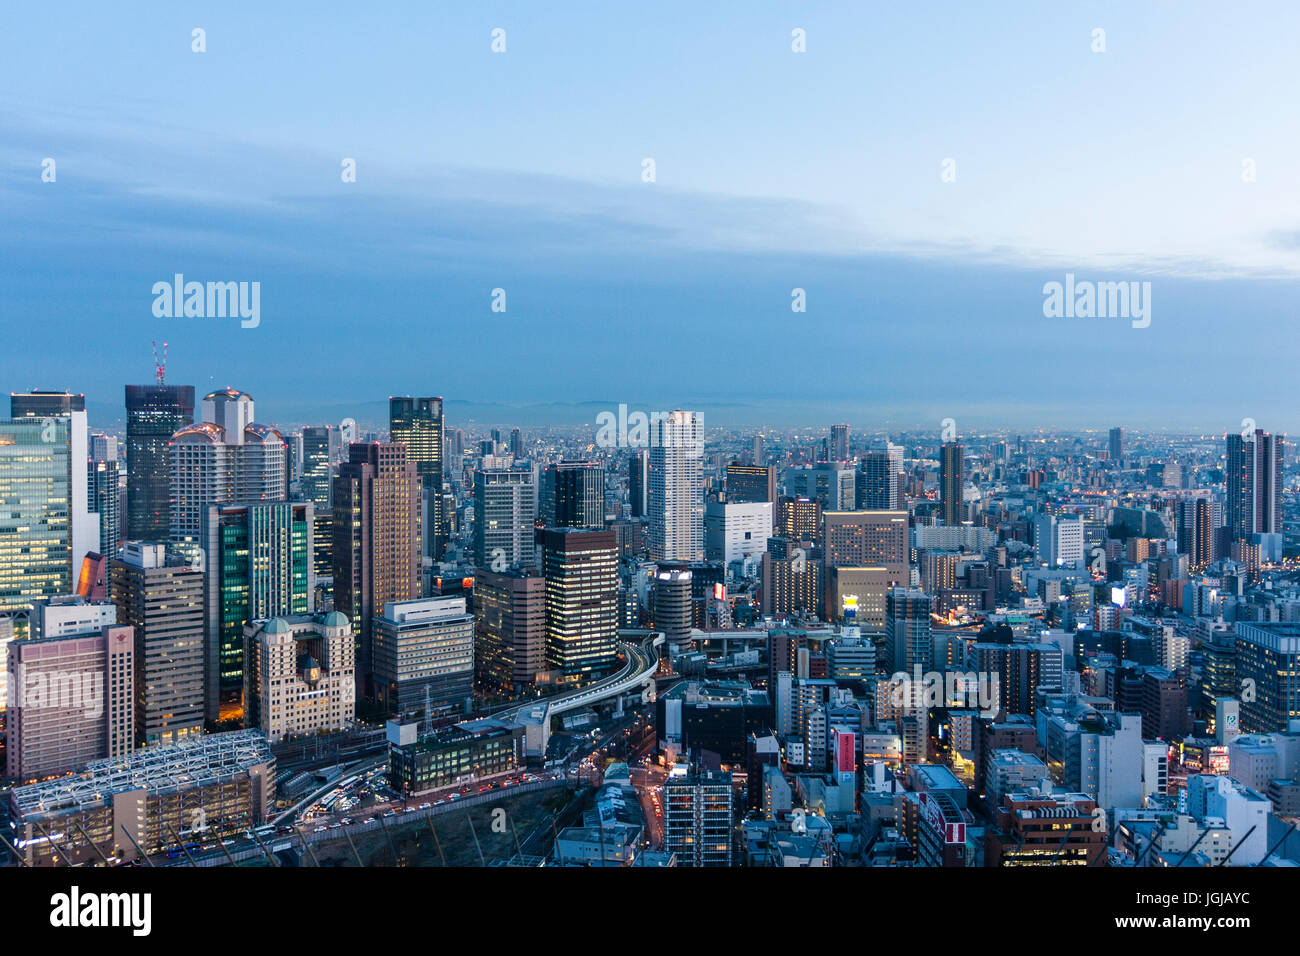 La Ville d'Osaka, au Japon. Crépuscule du soir high angle vue du haut des gratte-ciel Umeda. De tours de bureaux avec des montagnes en arrière-plan. Banque D'Images